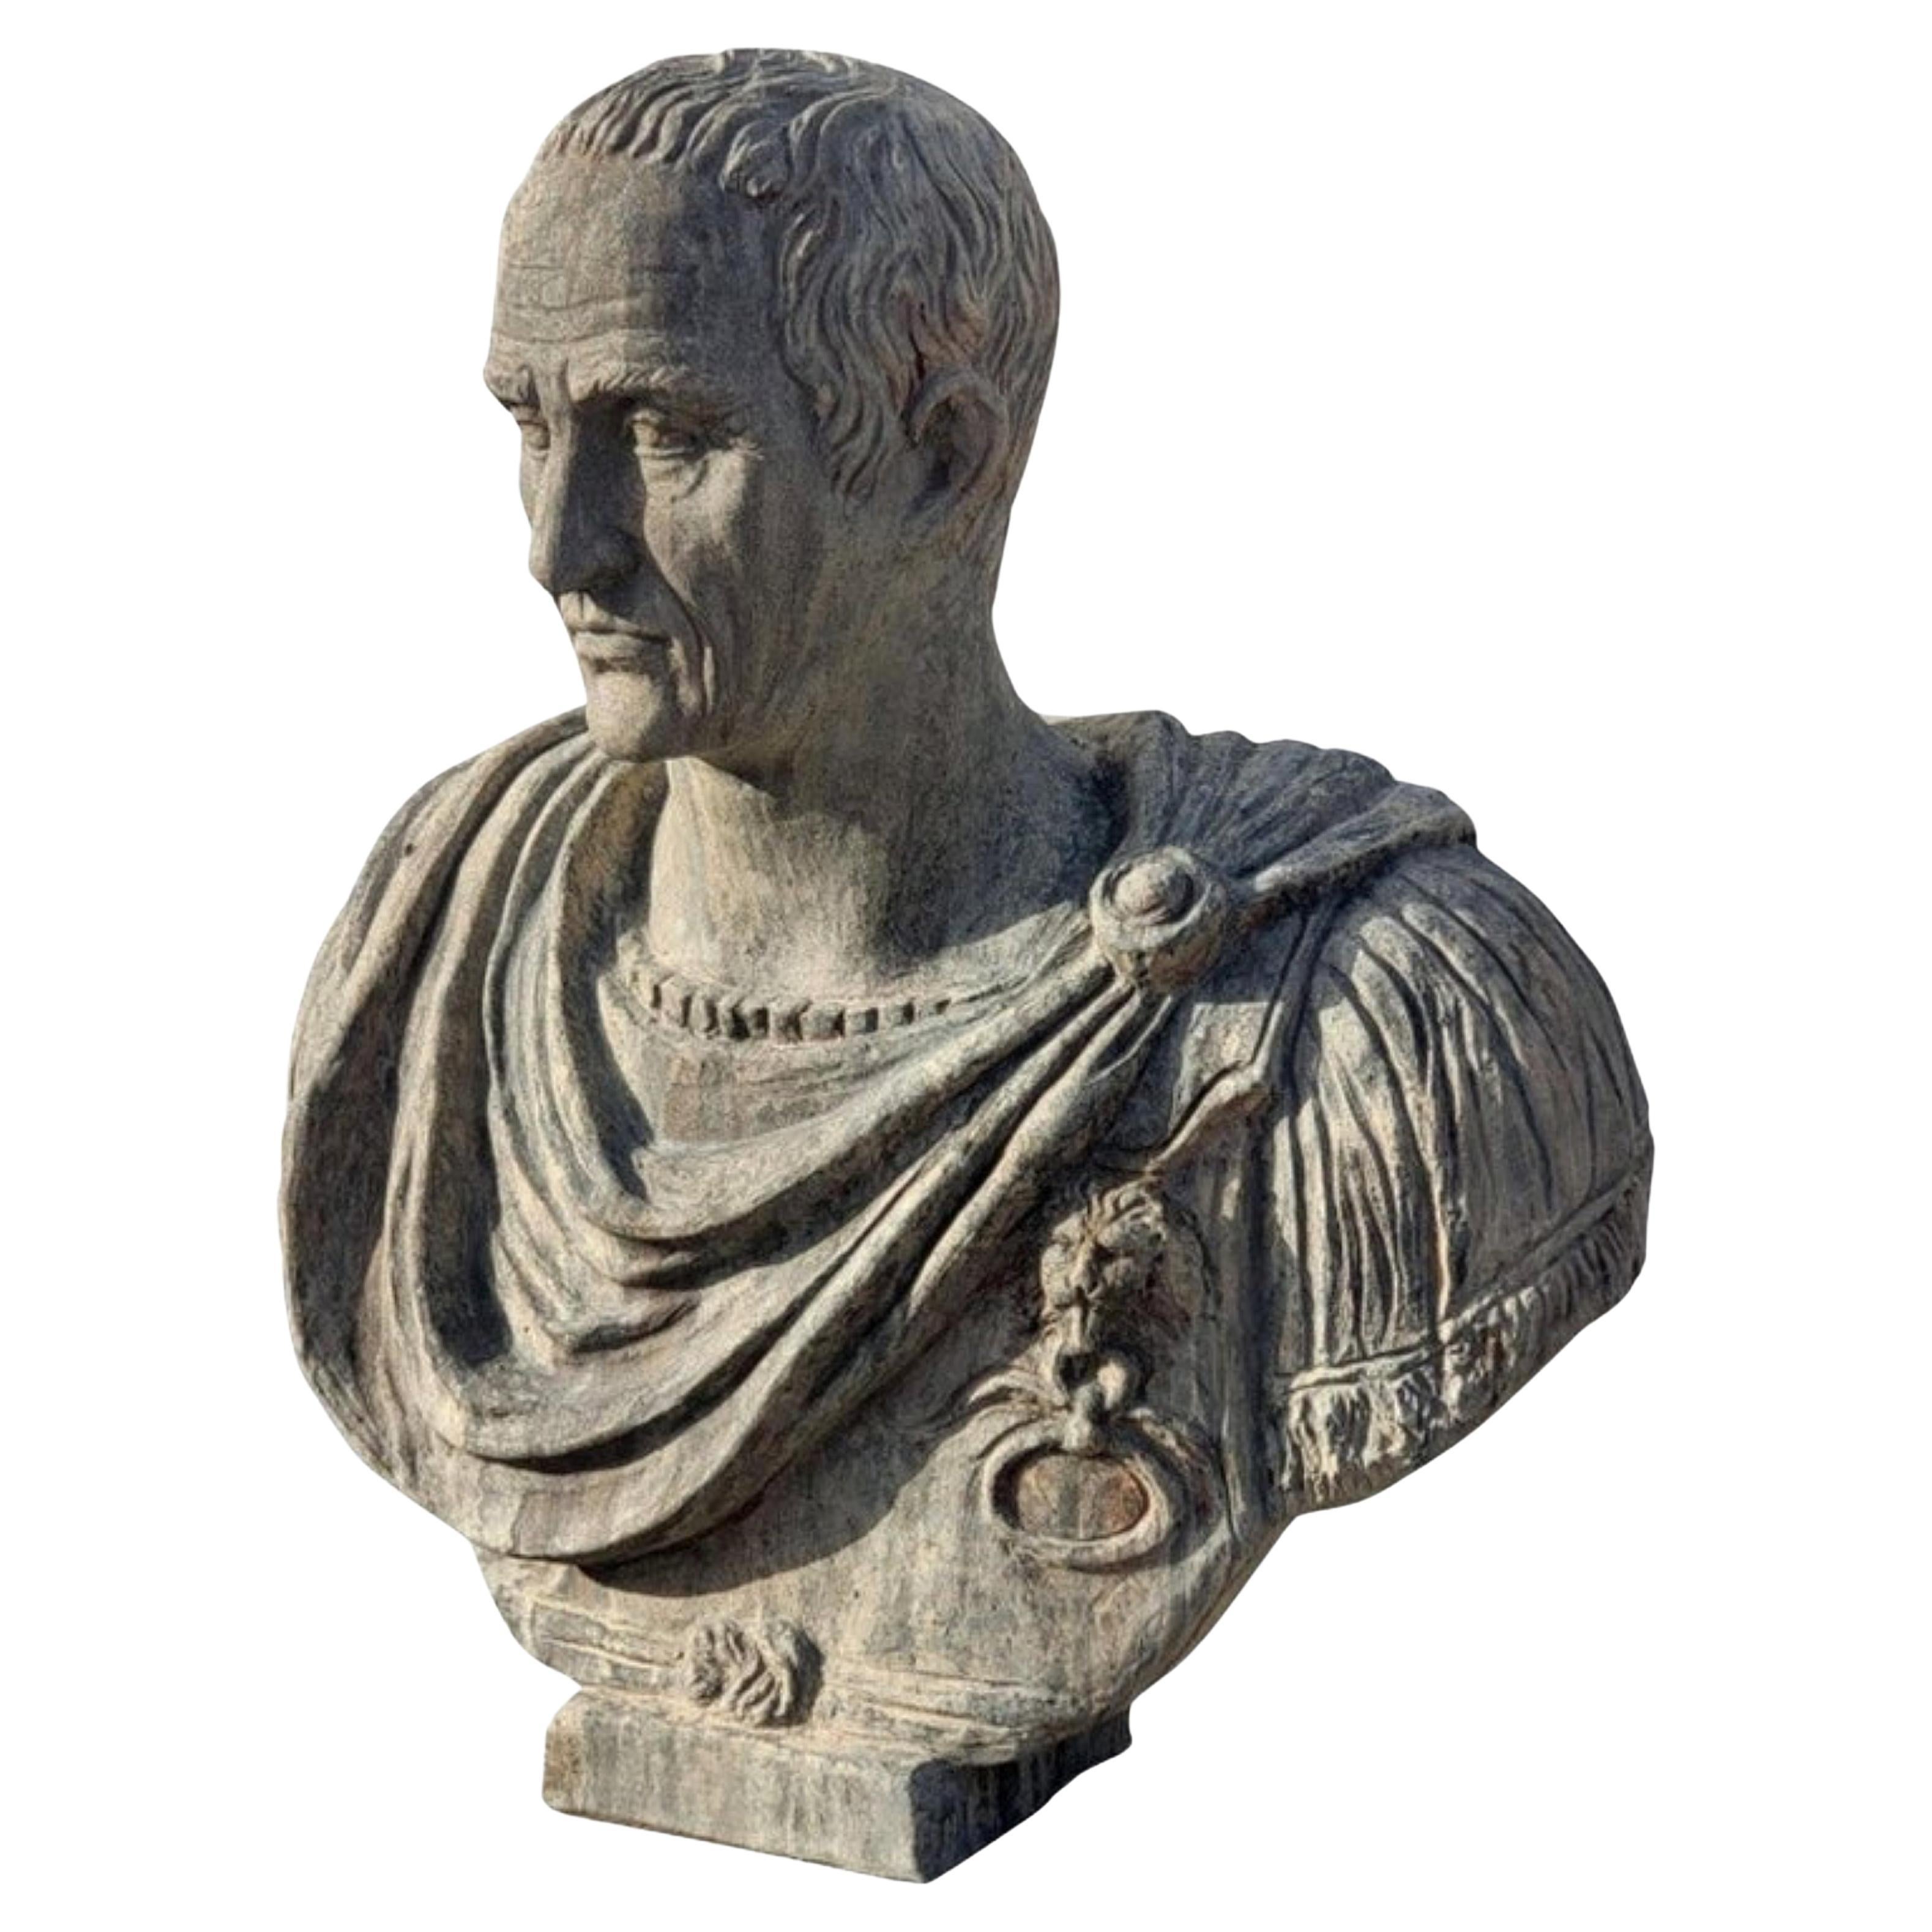 Kopie einer römischen Statue der Vatikanischen Museen von Julius Caesar aus dem frühen 20. Jahrhundert